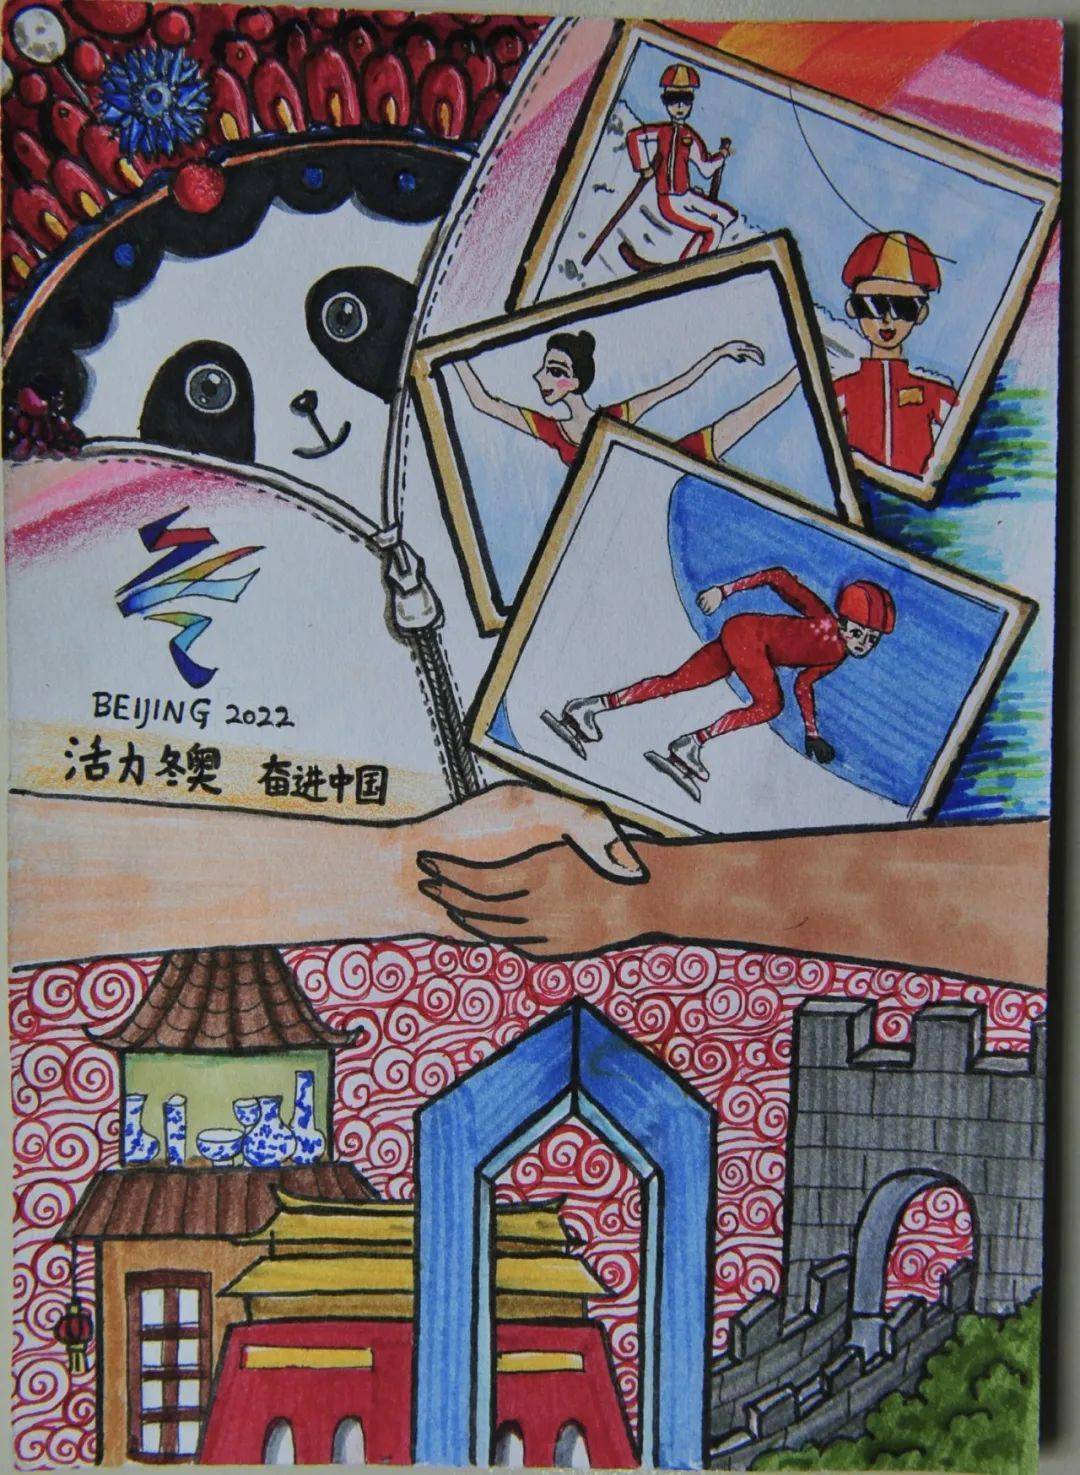 丰台区关工委组织小学生用绘画为北京冬奥加油助力_冬奥会_作品_奥运